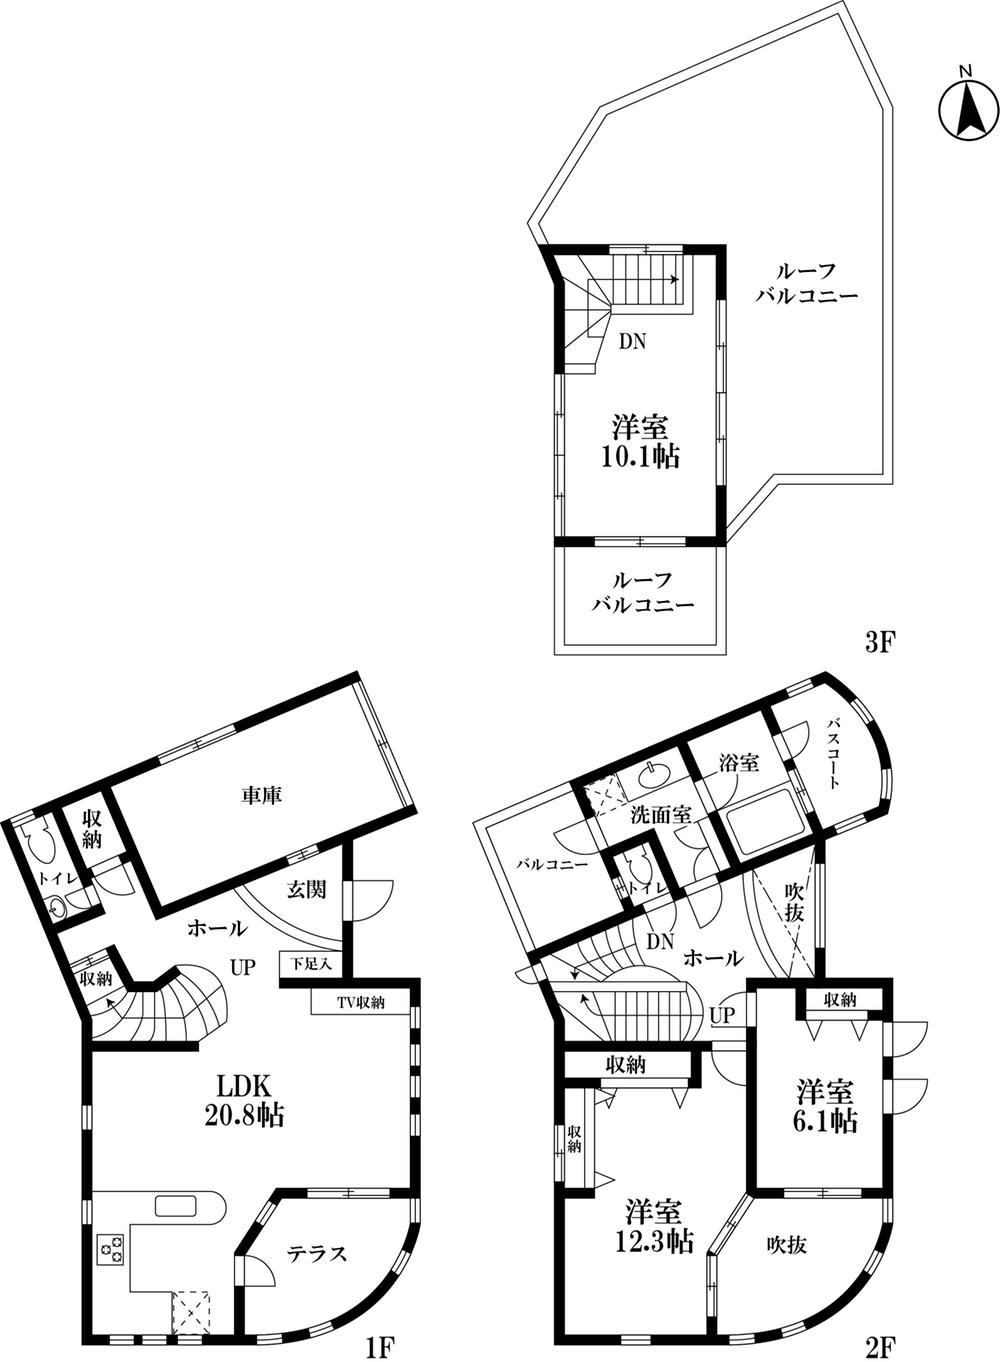 山川設計デザインの赤堤デザイナーズ住宅